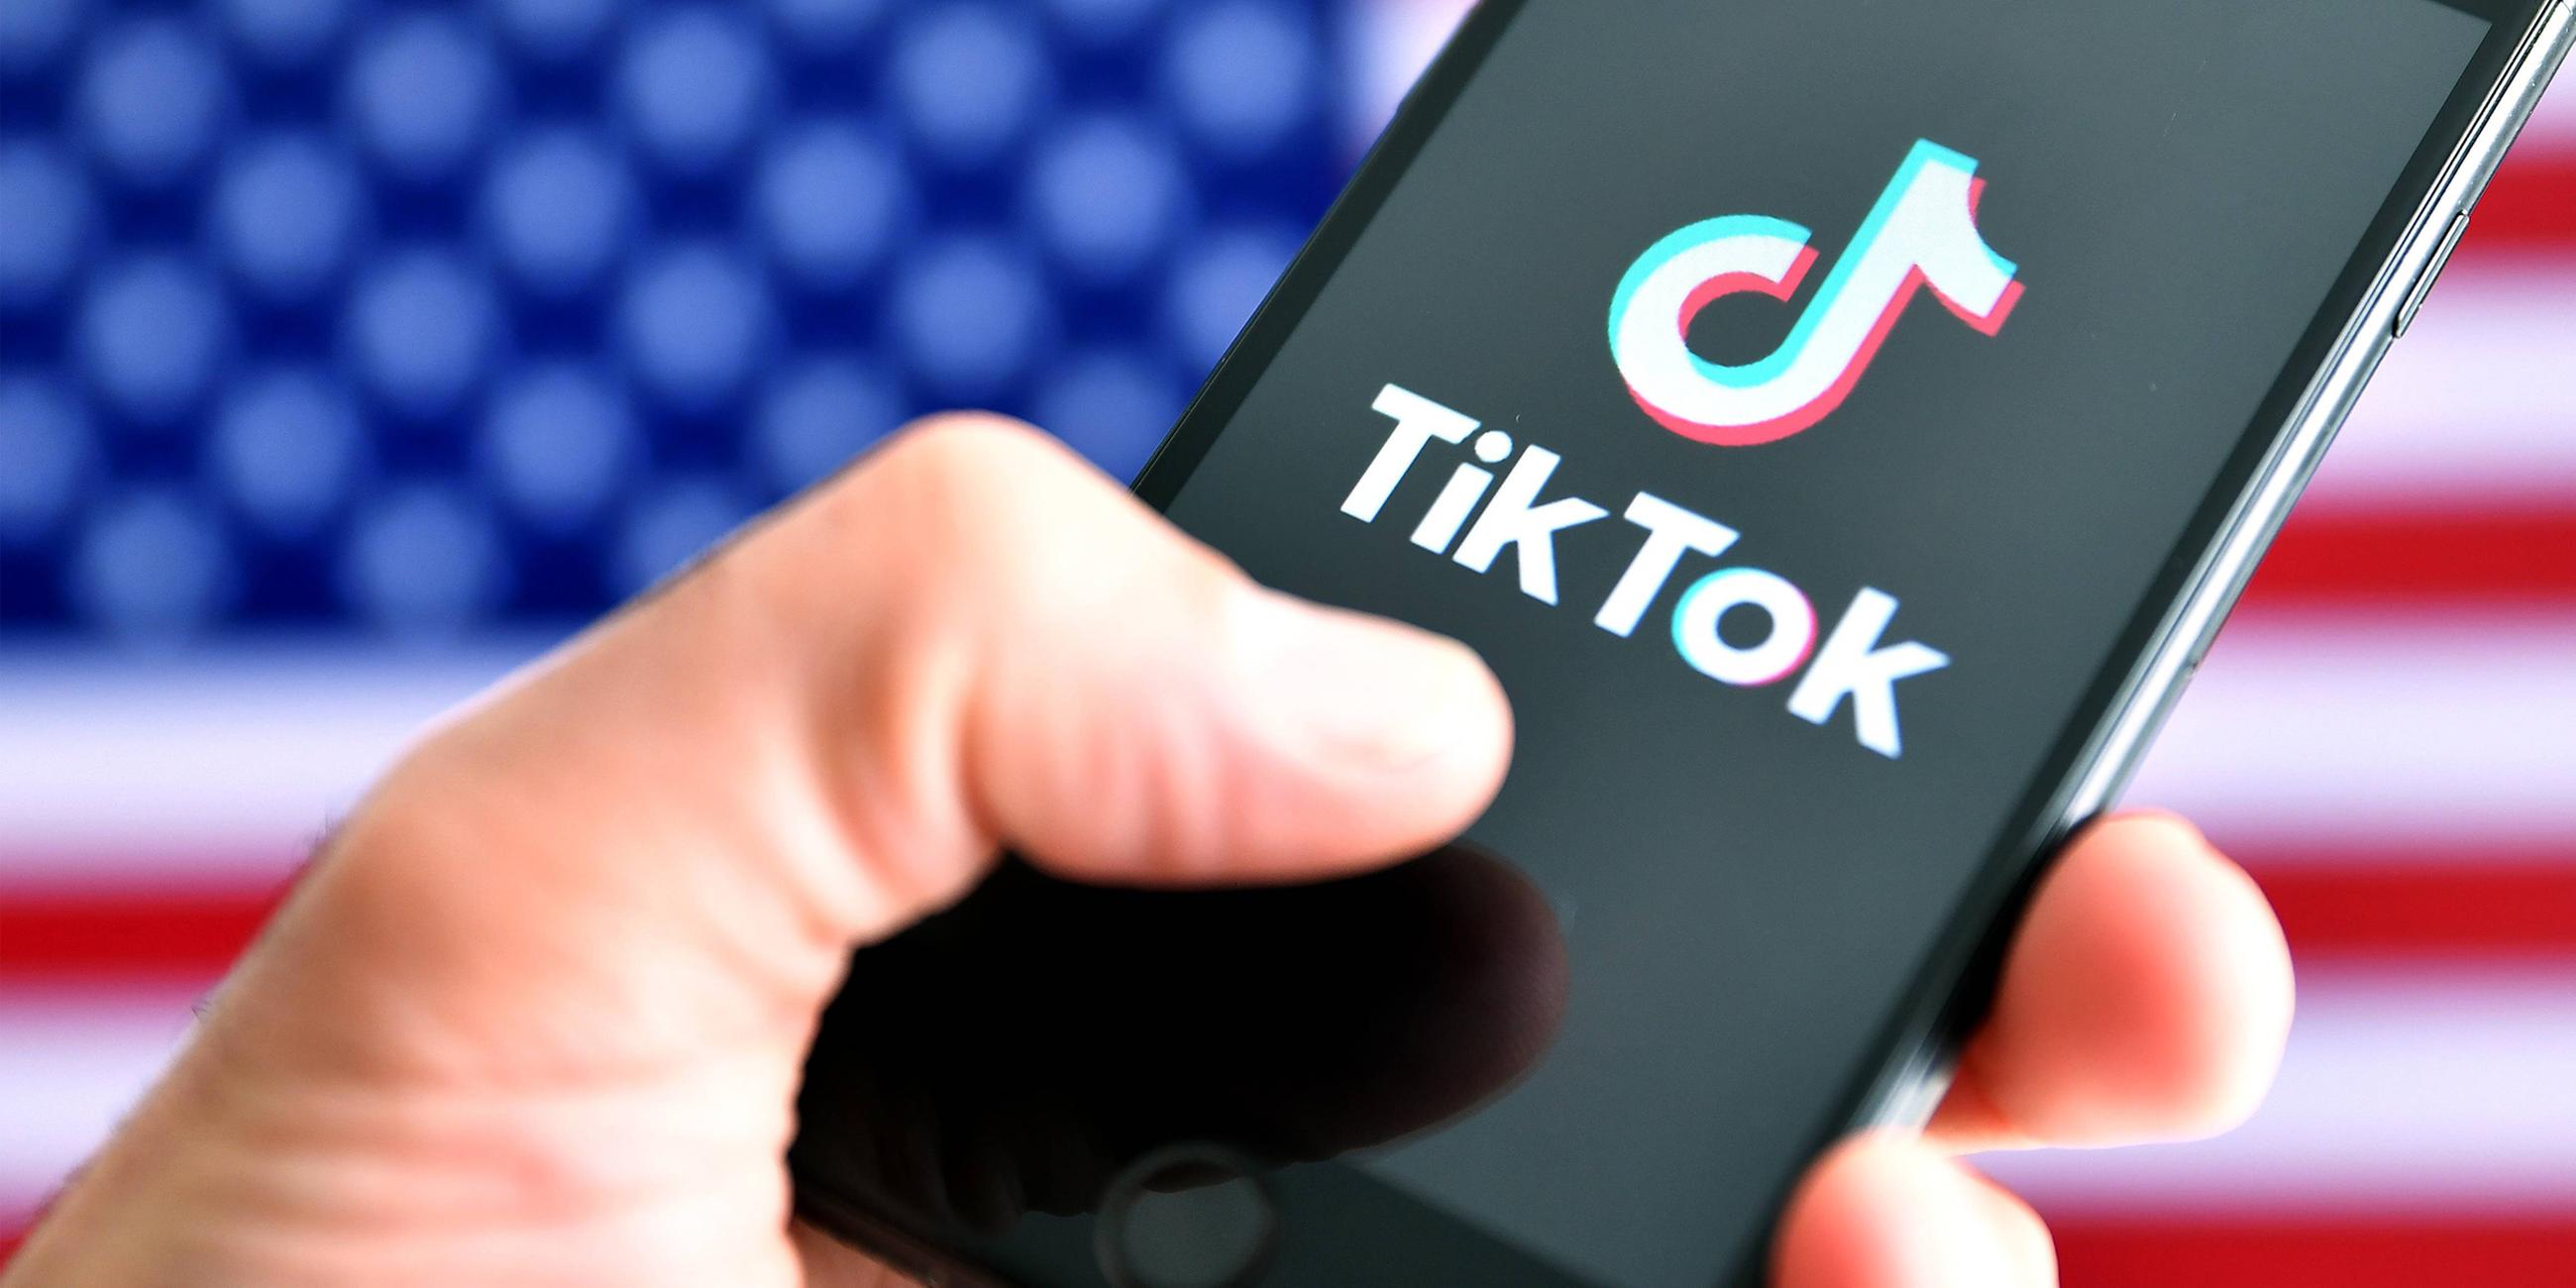 Das Logo der mobilen App TikTok der Firma ByteDance ist auf dem Bildschirm eines Smartphones zu sehen.